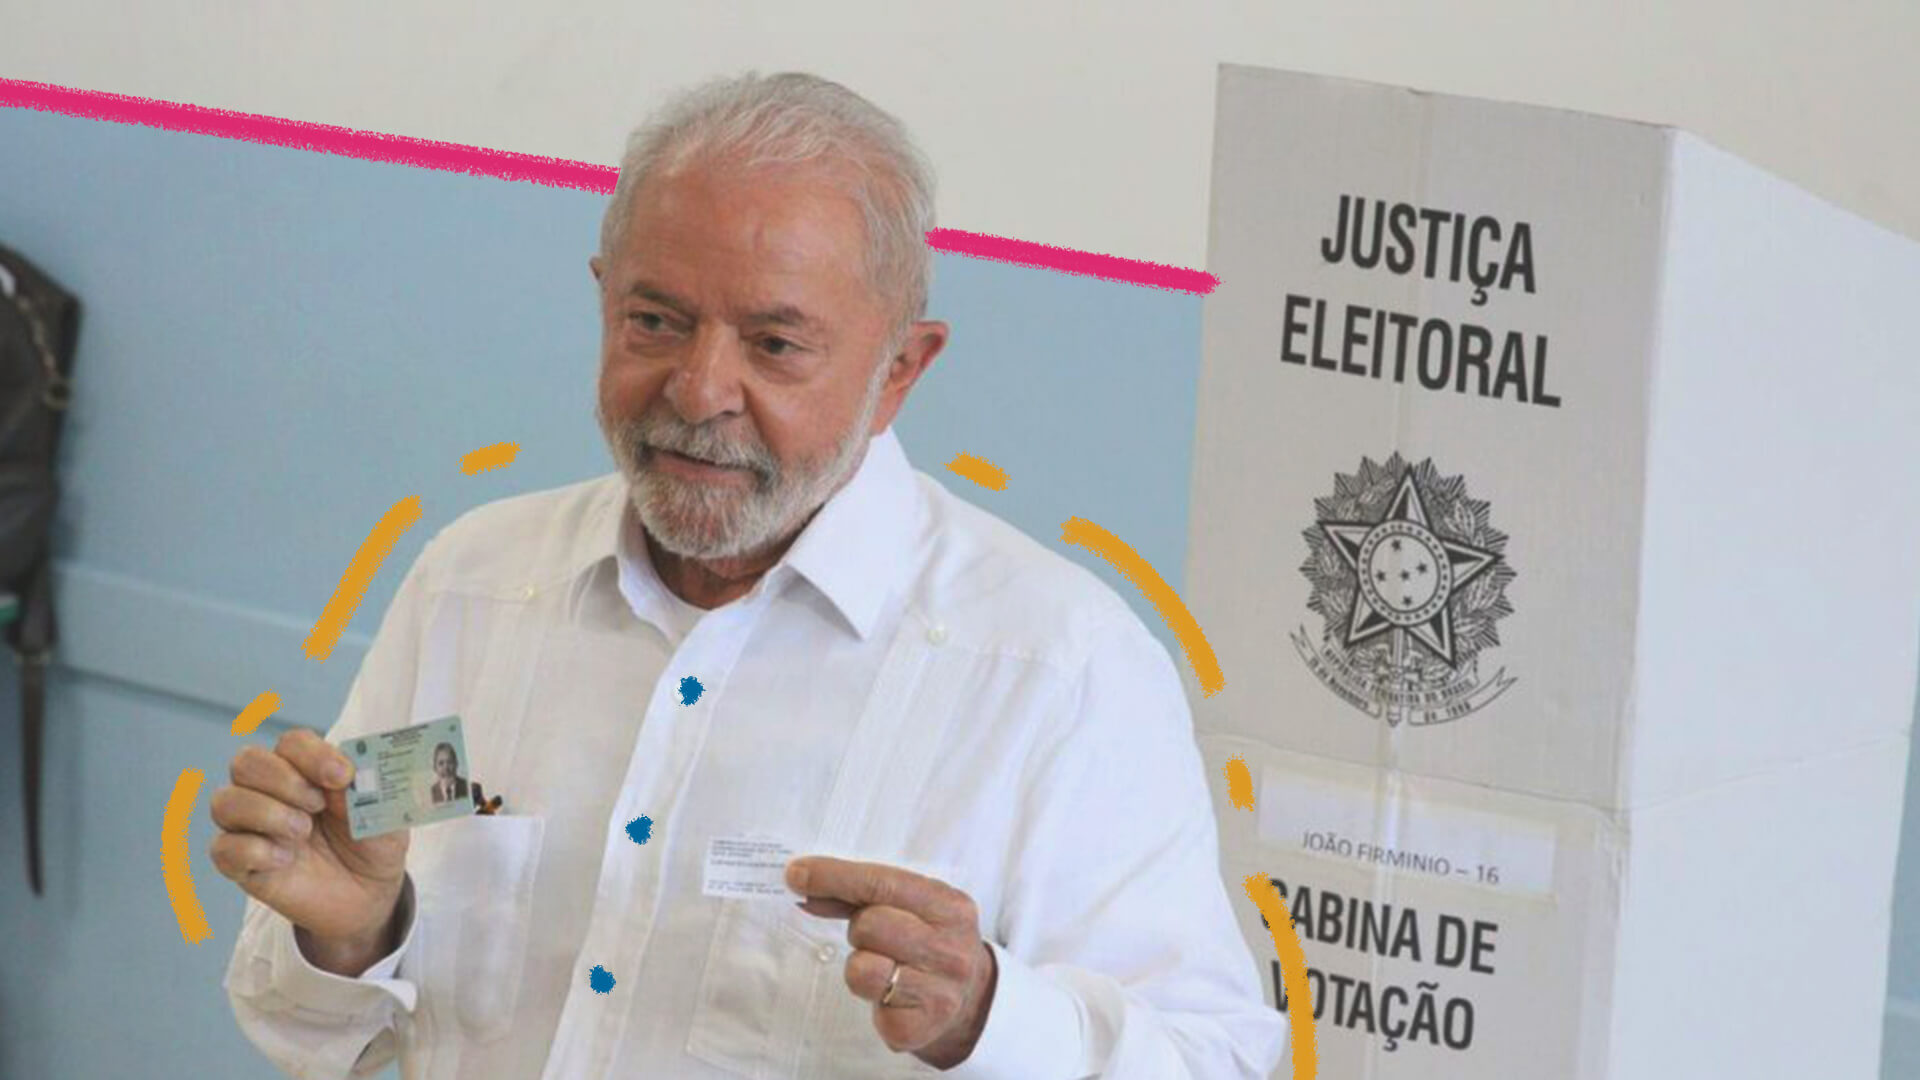 A imagem mostra Luiz Inácio Lula da Silva, um homem branco, idoso, com barba e cabelos brancos. Ele veste uma camisa branca, segura nas mãos um comprovante de eleição e sua habilitação para dirigir.